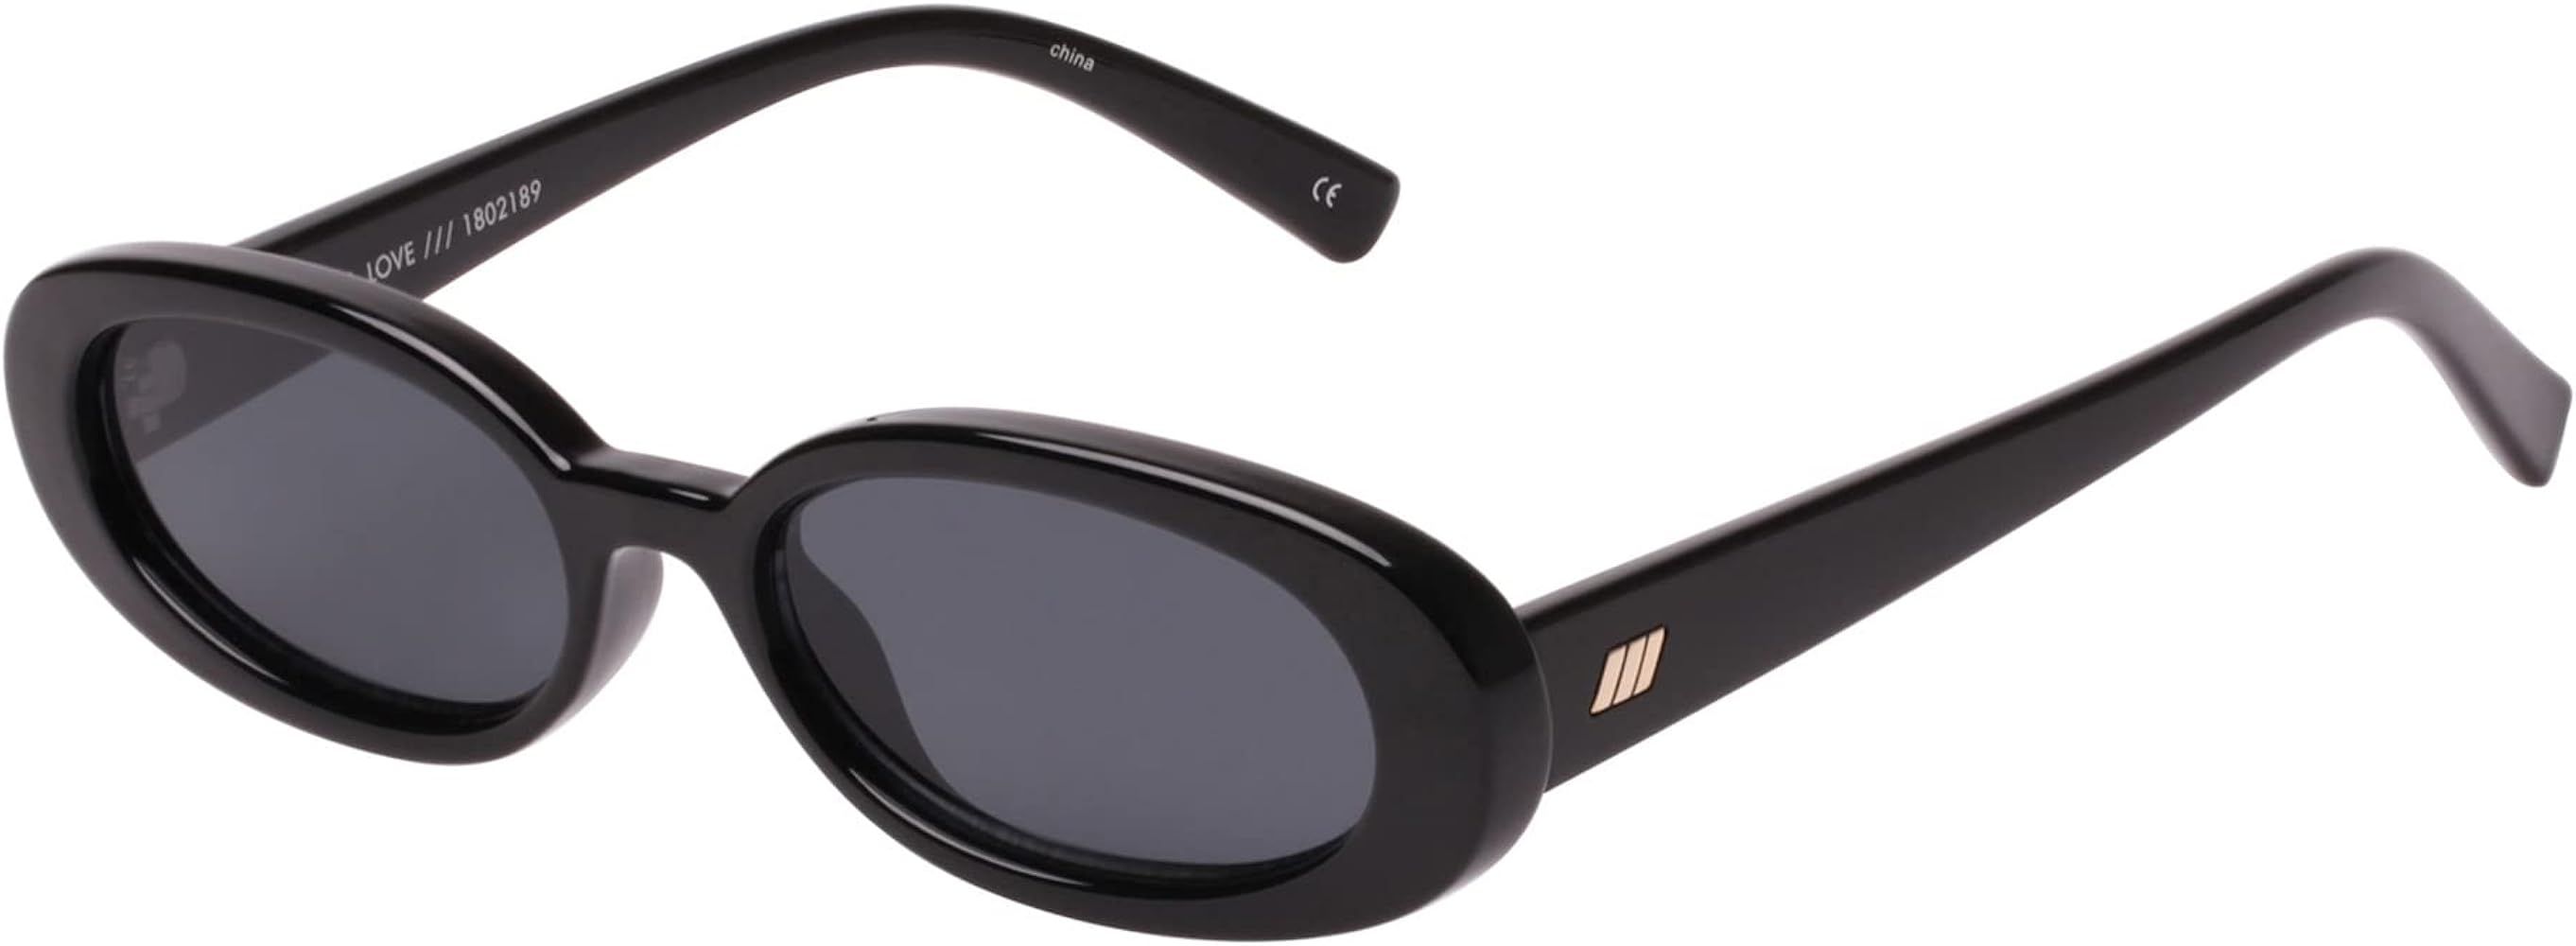 Women's OUTTA LOVE Sunglasses | Amazon (US)